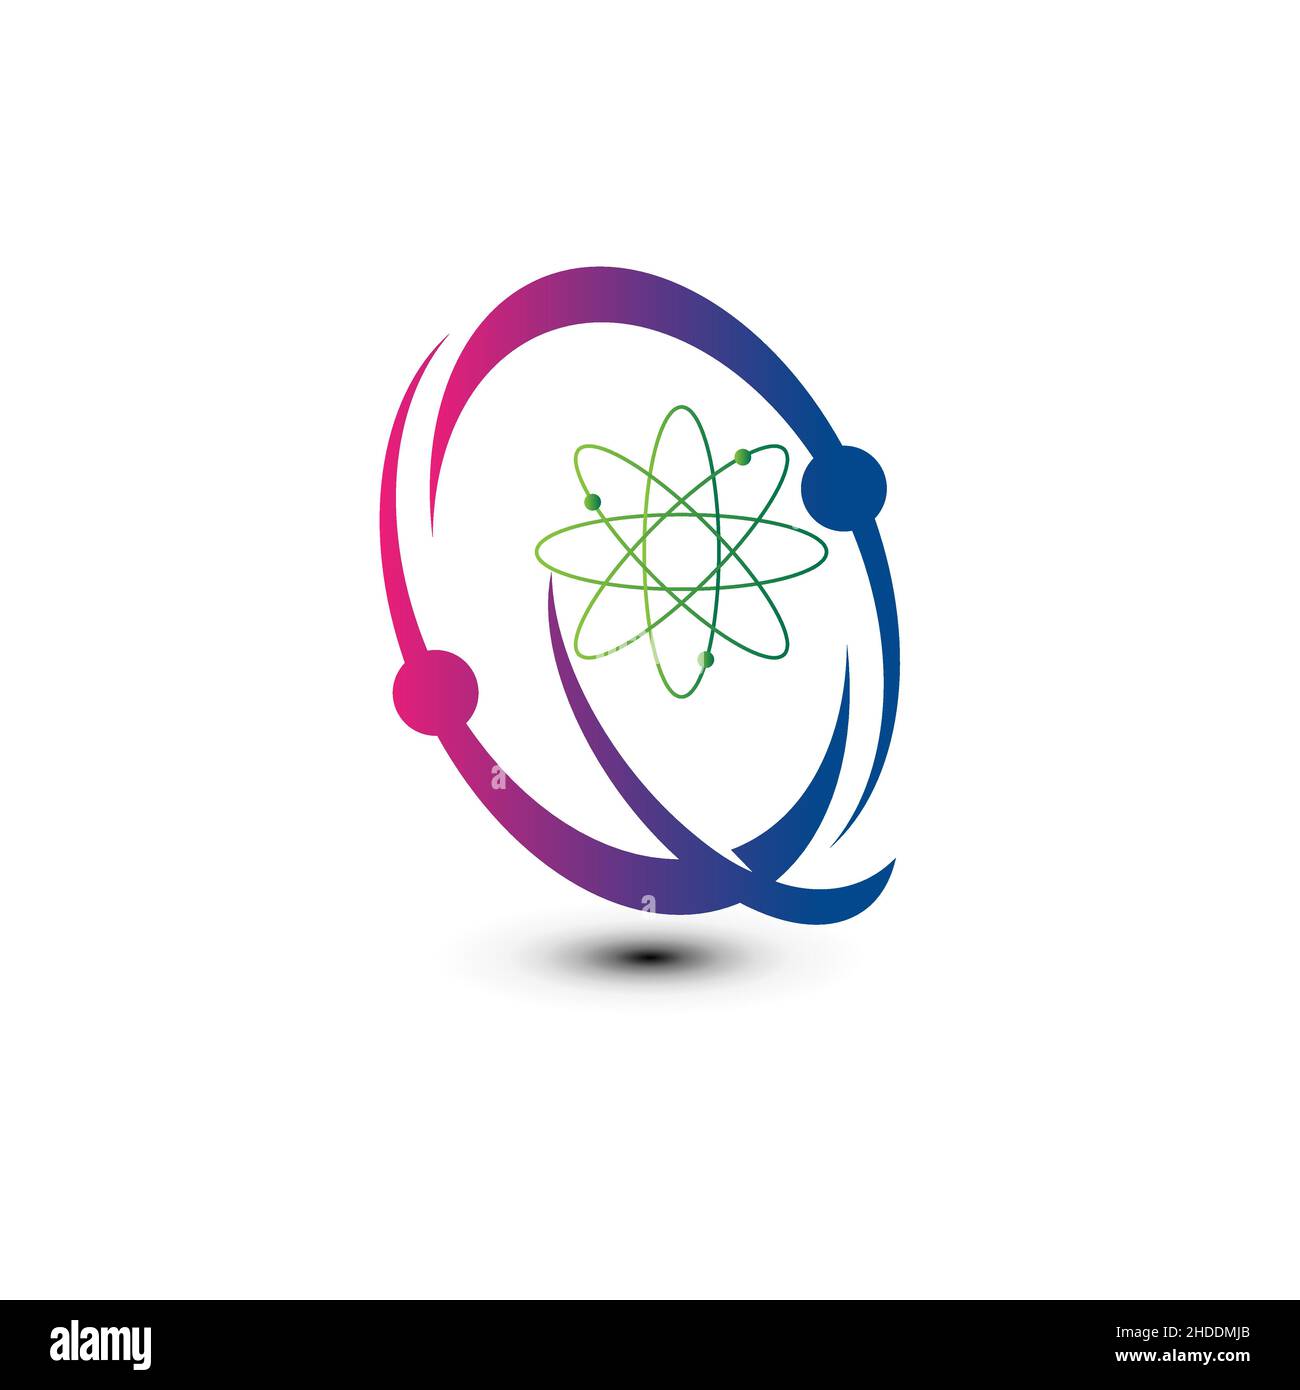 Atom vettore semplice icona lineare, scienza e tecnologia soluzioni creative linea arte symbol.EPS10 Illustrazione Vettoriale